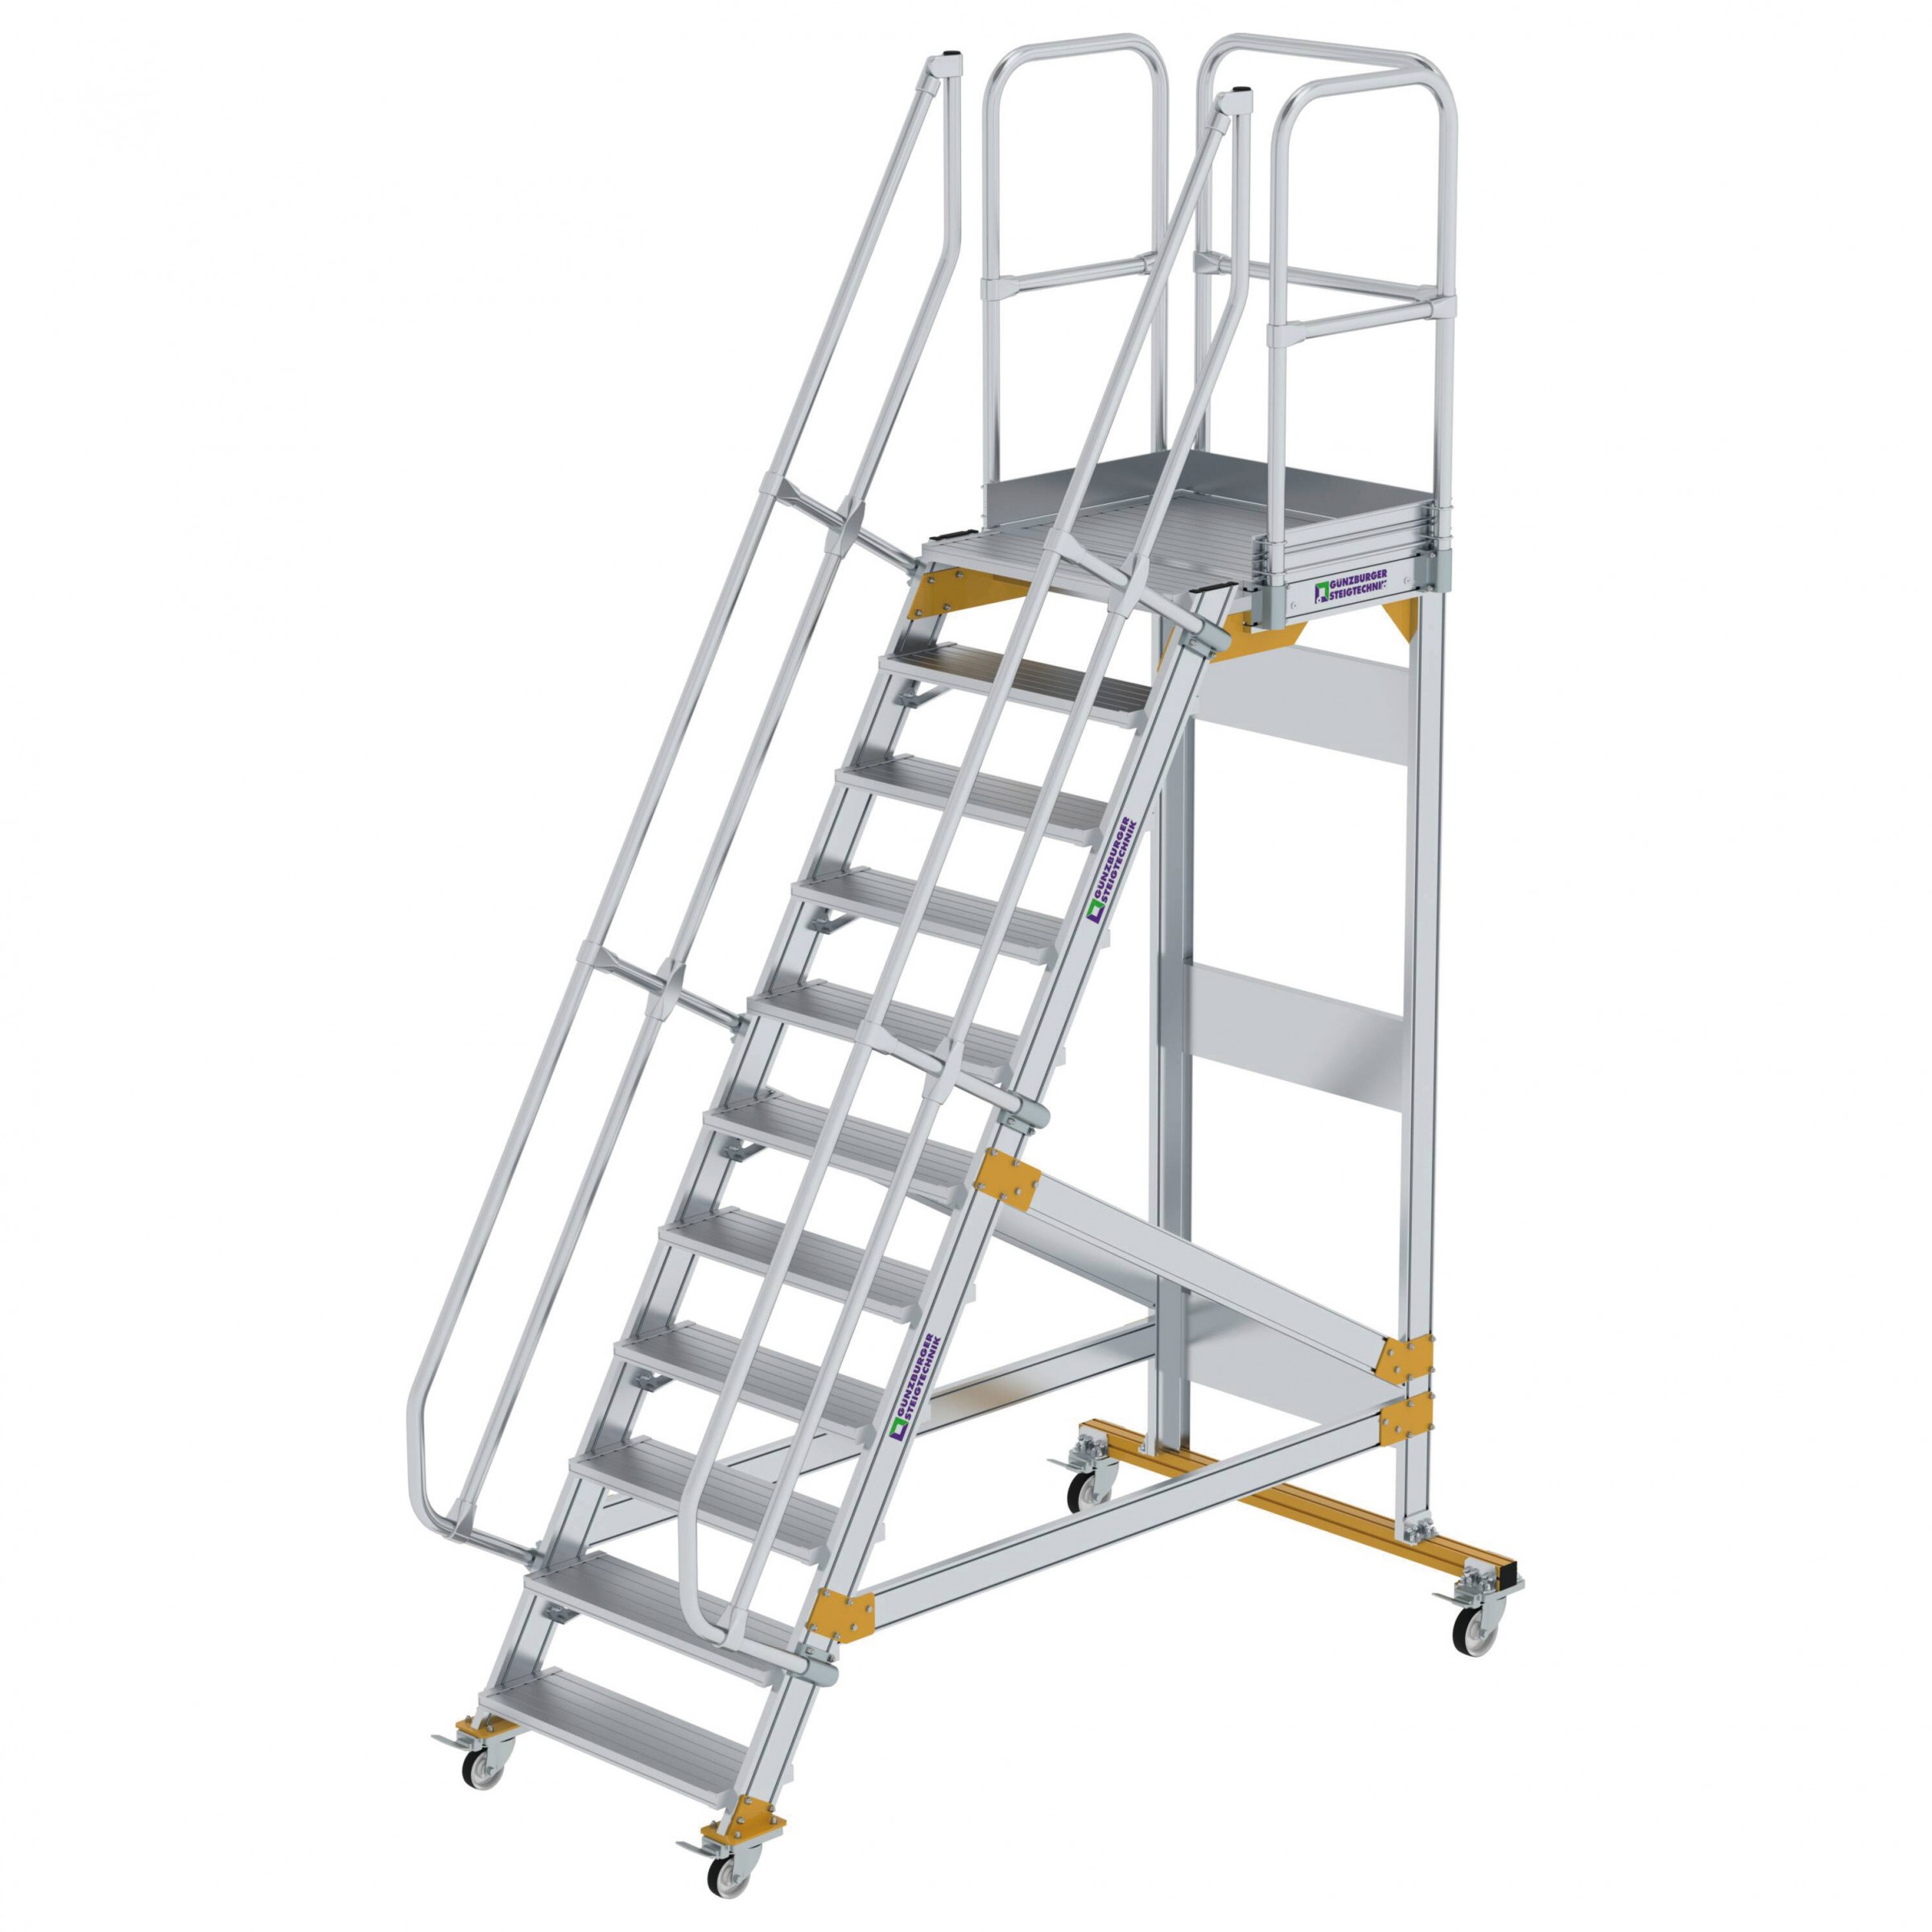 Aluminium-Plattform-Treppe fahrbar 60°, Stufenbreite 800 mm, 5 Stufen